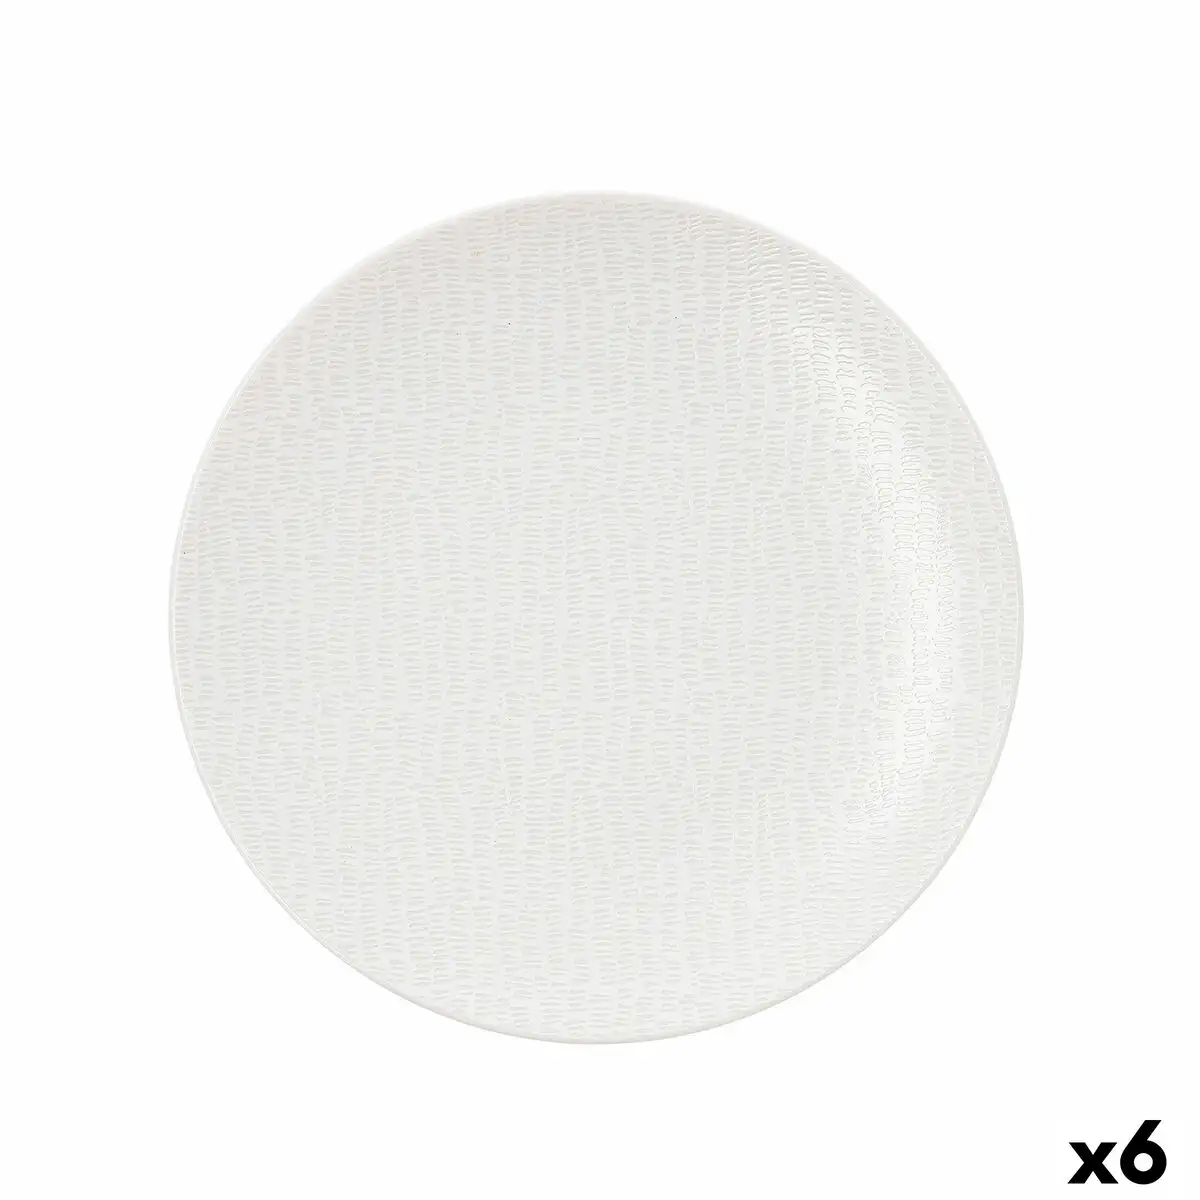 Assiette plate ariane ripple ceramique blanc 22 cm 6 unites _2969. DIAYTAR SENEGAL - Où Choisir est une Découverte. Parcourez notre catalogue et trouvez des articles qui éveillent votre curiosité et enrichissent votre expérience shopping.